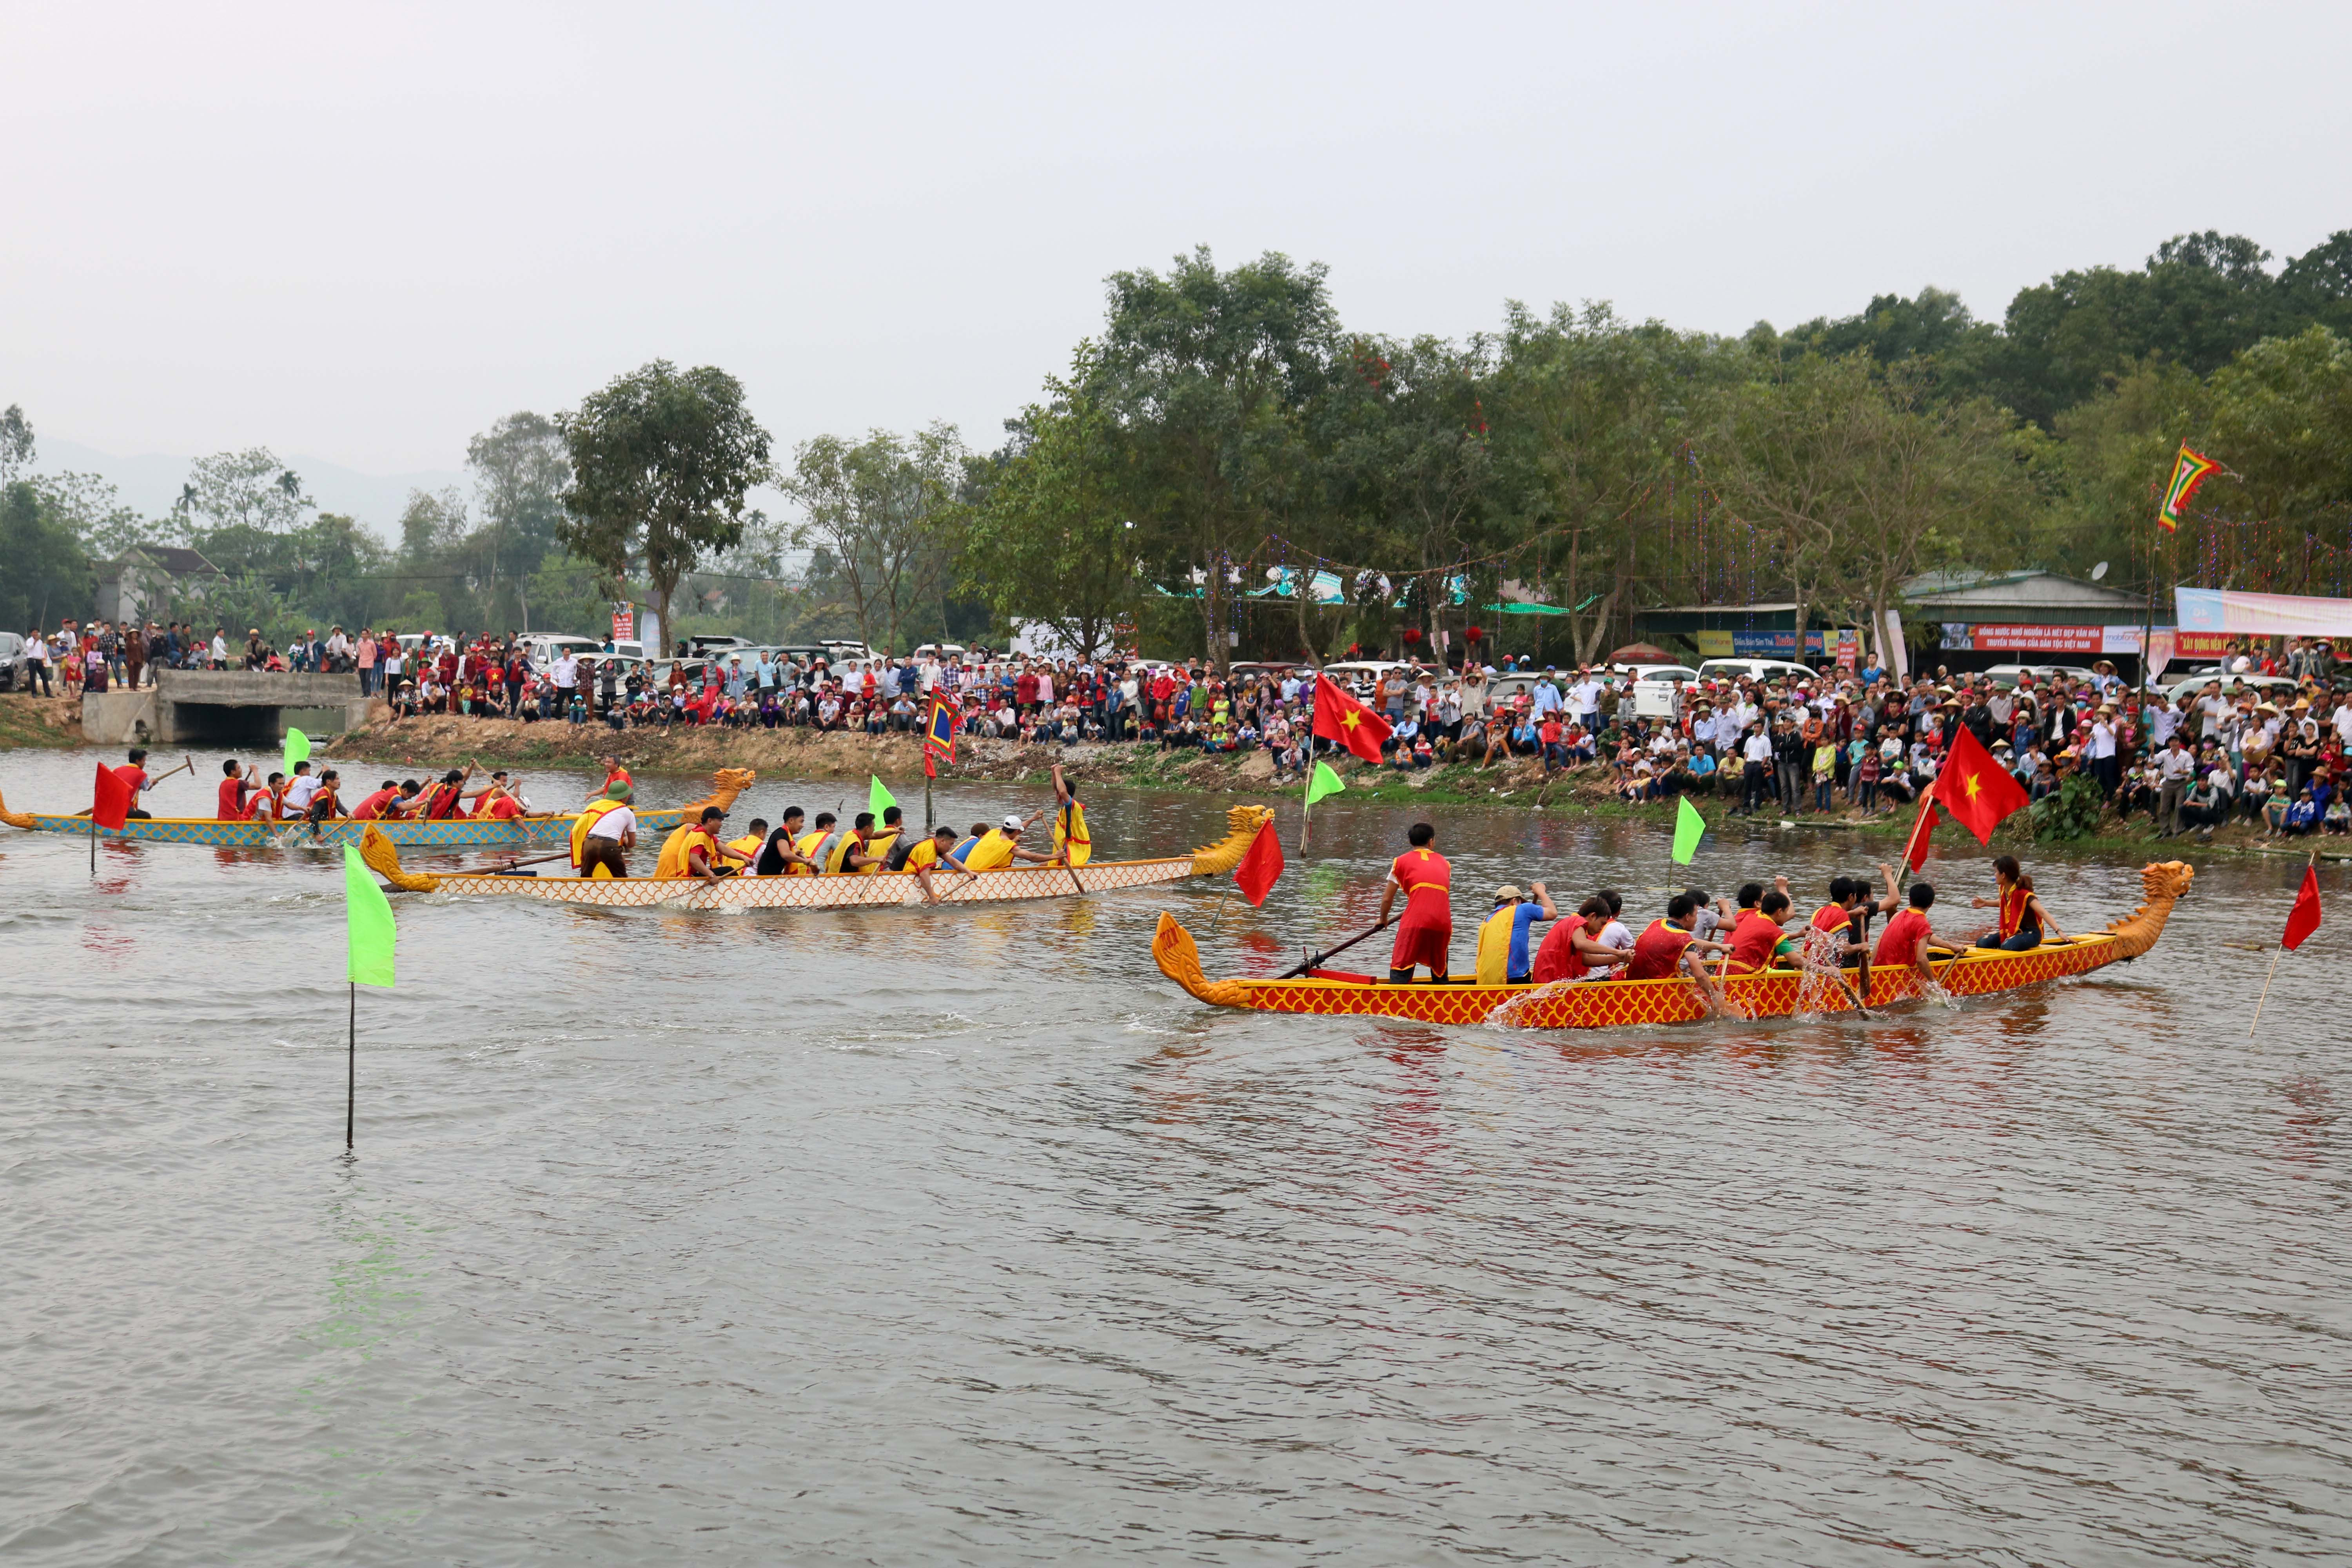 4.Tham gia hội đua thuyền năm nay có  20 đội đến từ các xóm trong xã Phúc Thành. Sau cuộc thi vòng loại, chỉ còn 8 đội vào chung kết.